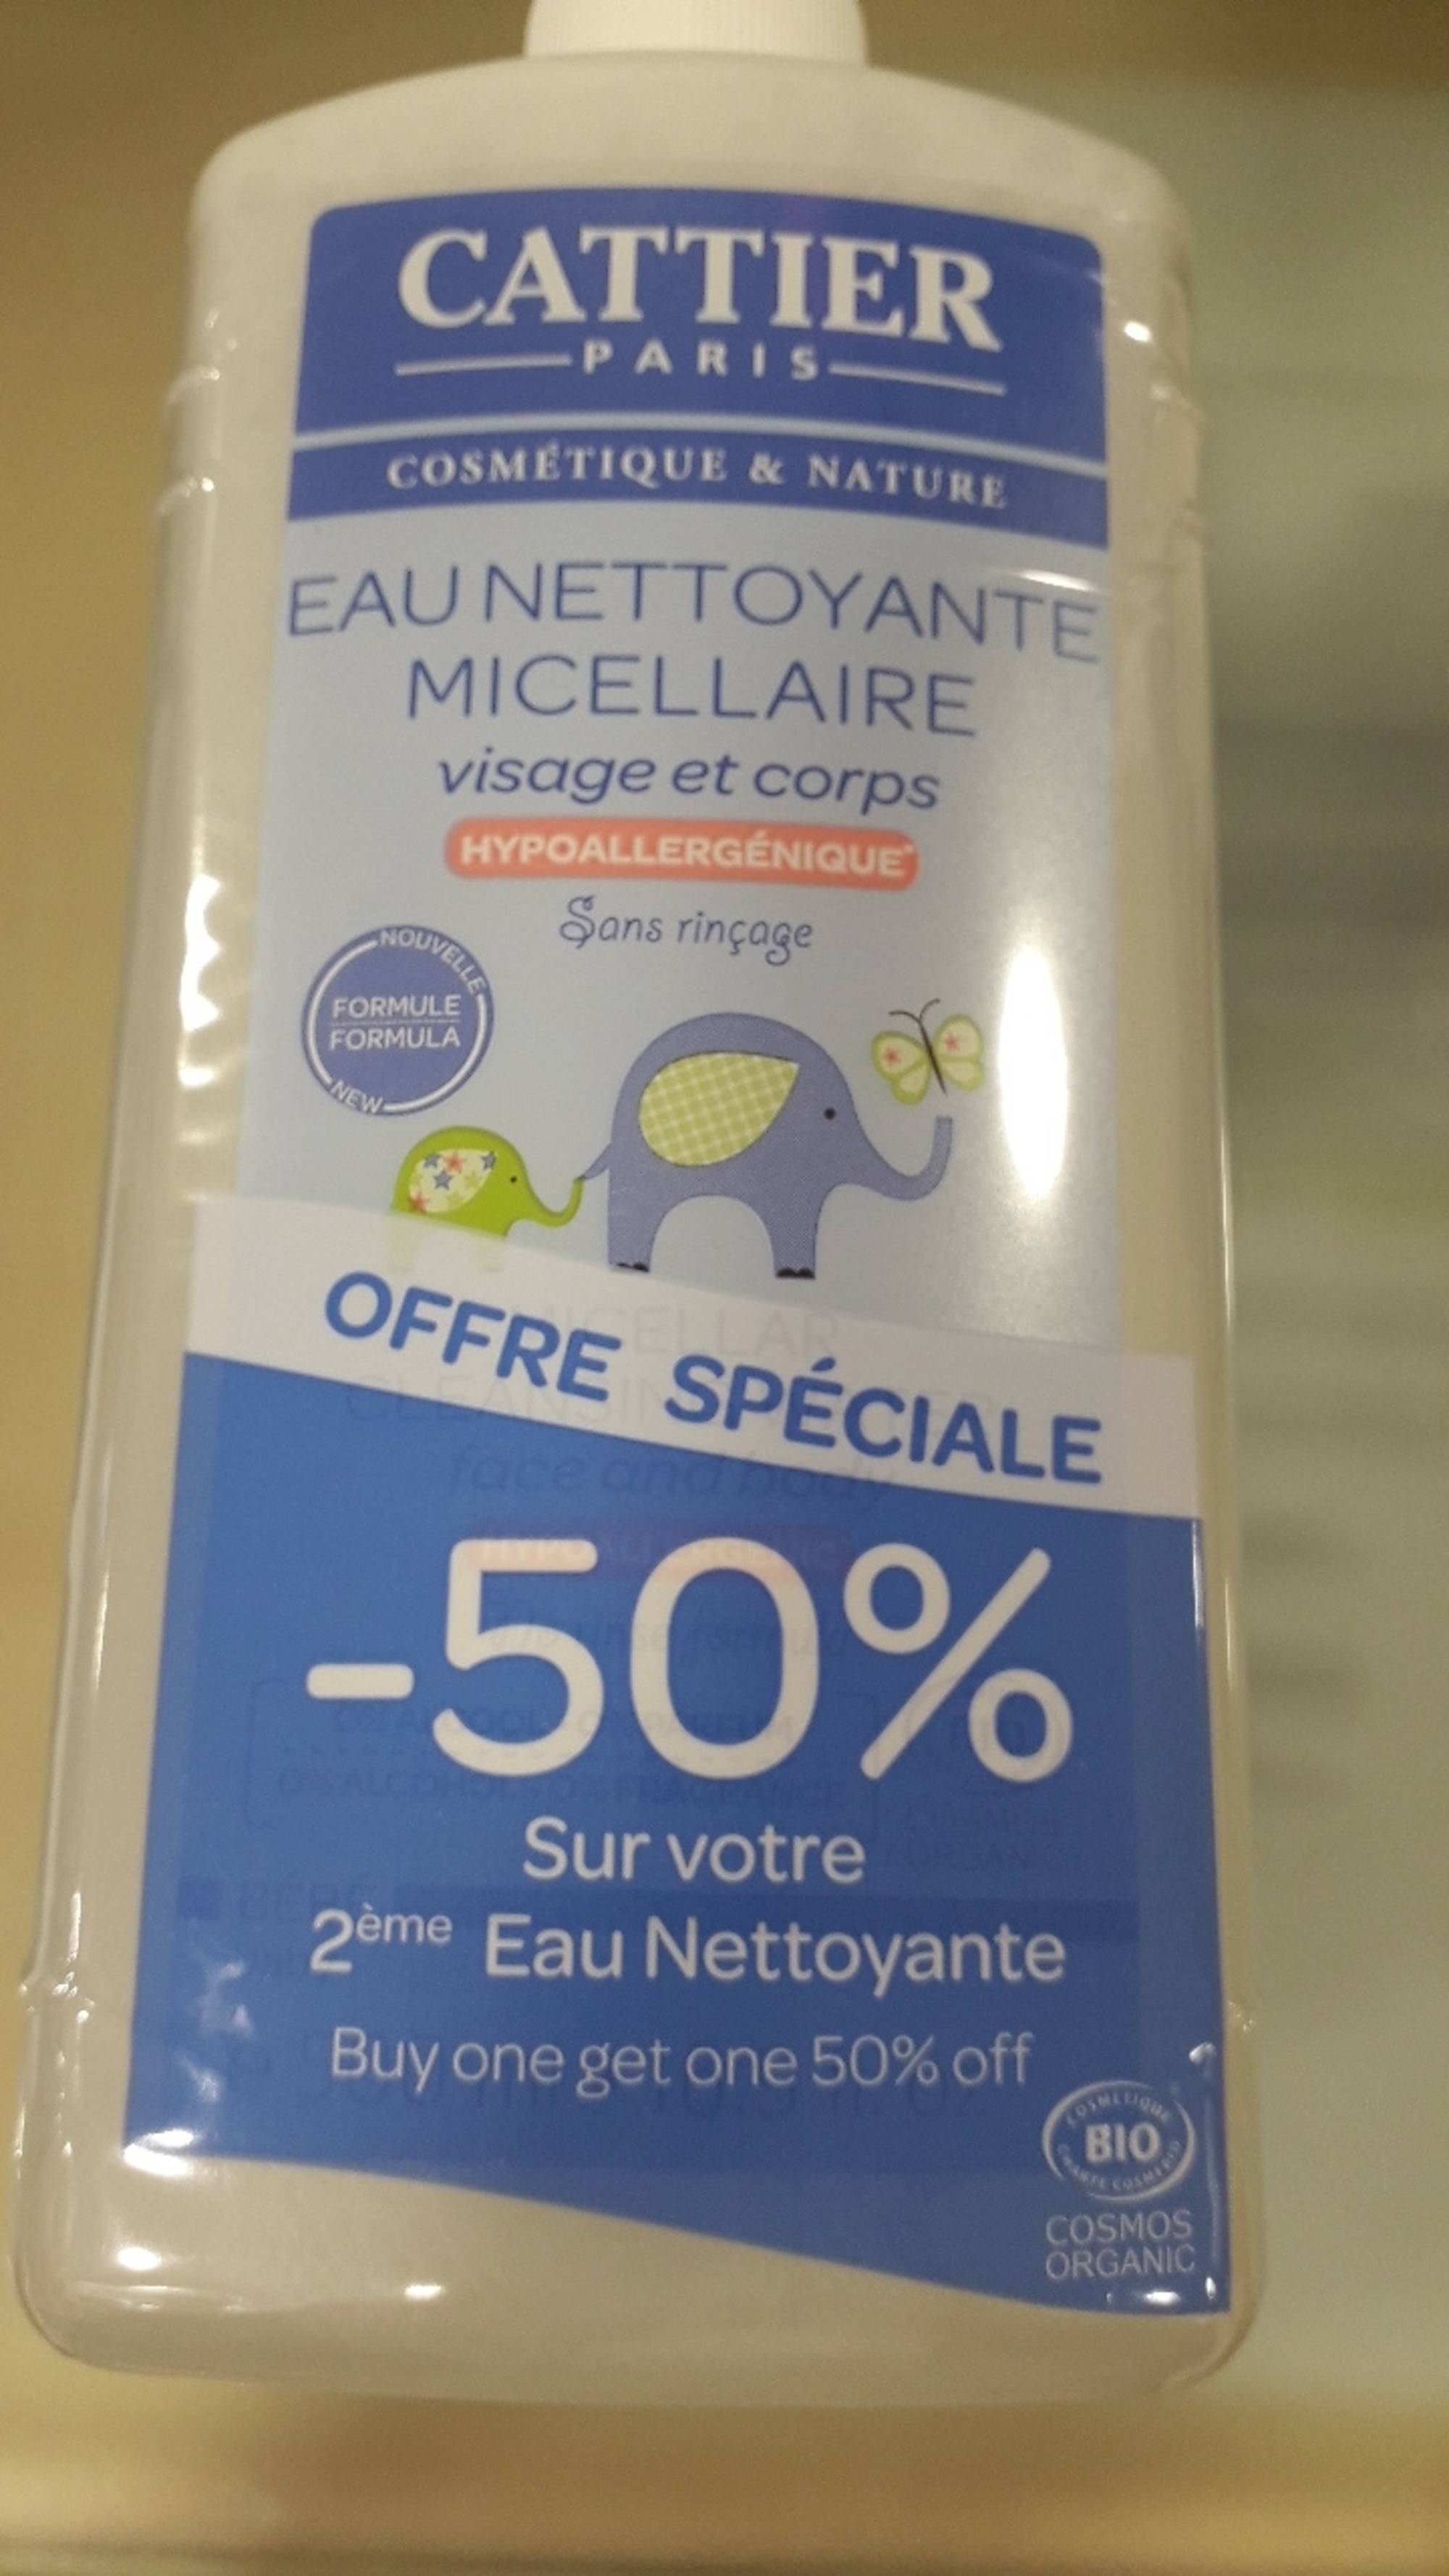 CATTIER PARIS - Eau nettoyante micellaire